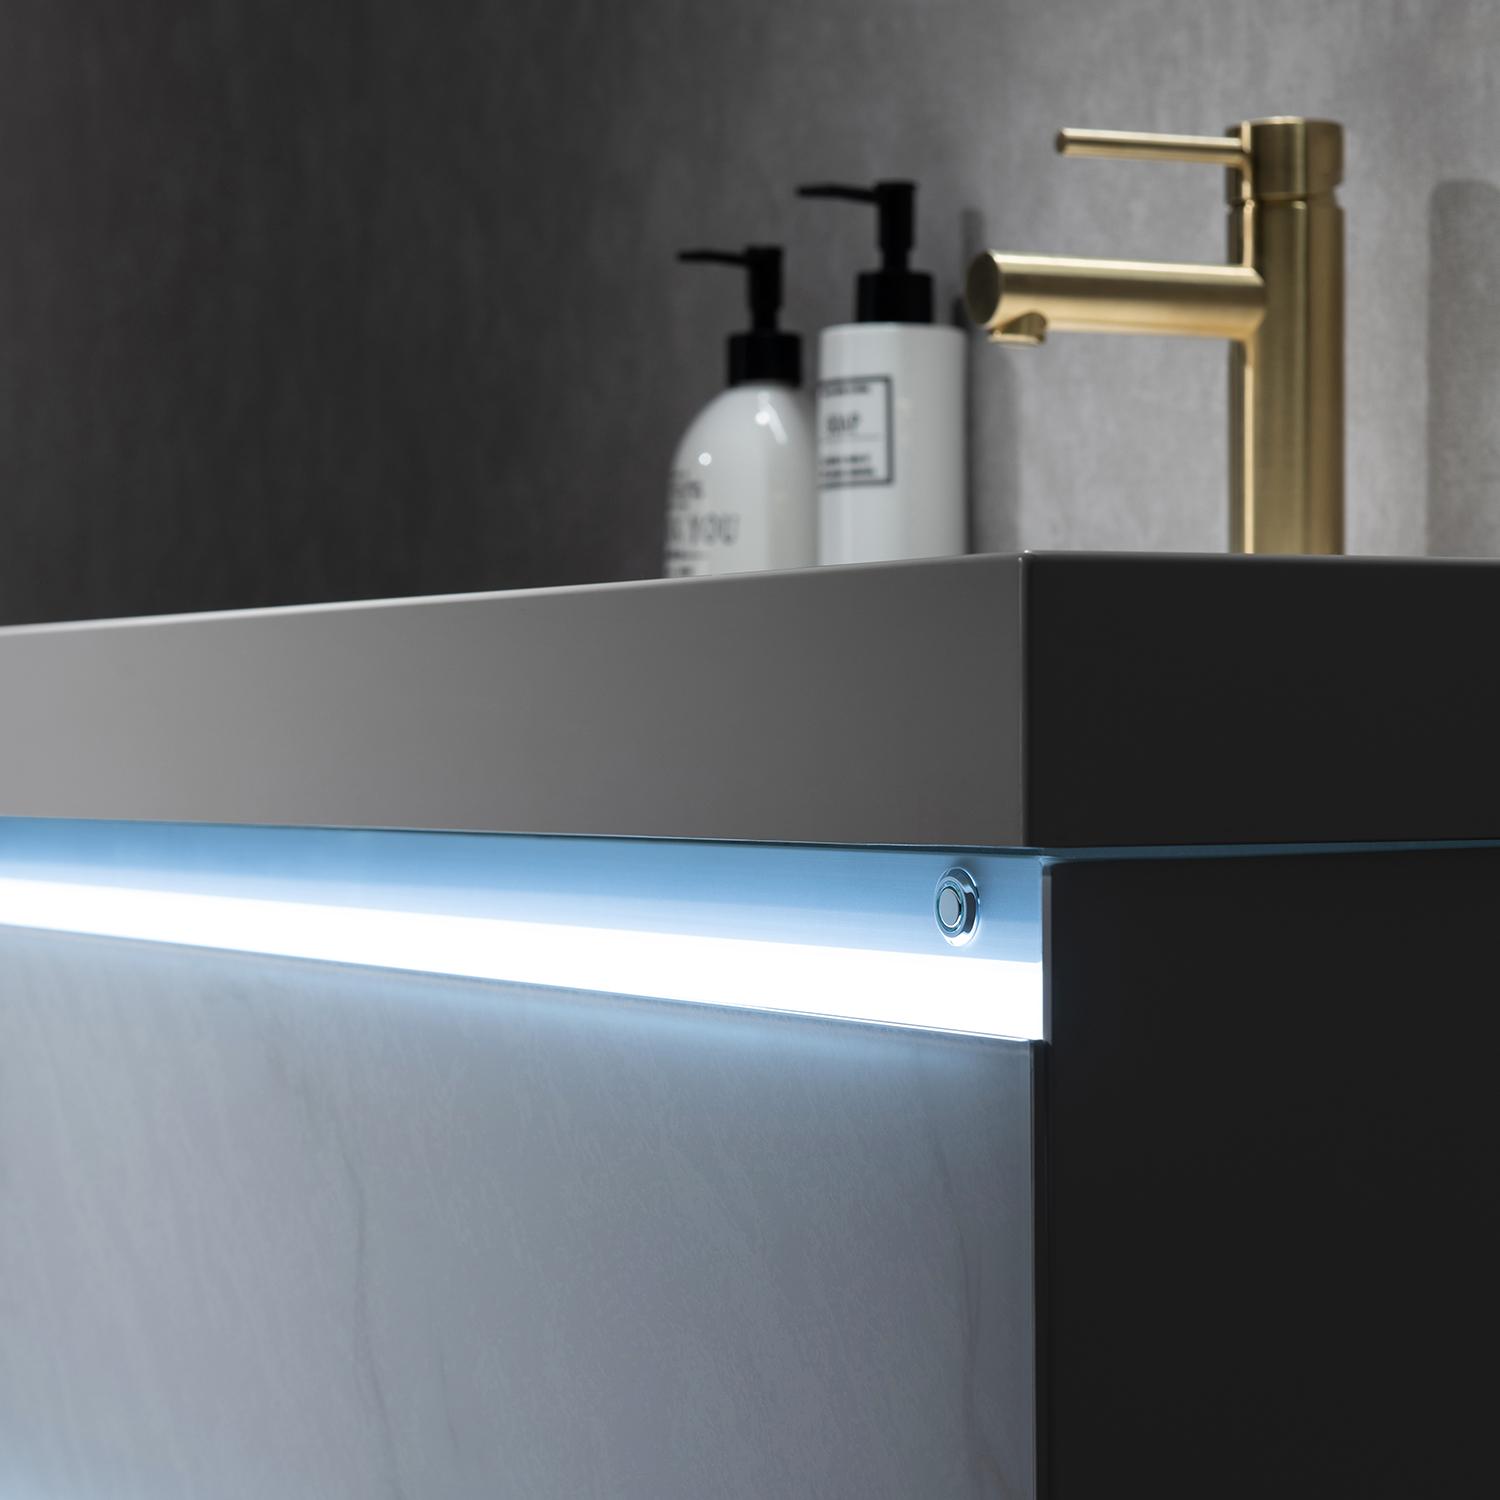 Jena 48" Bathroom Vanity with Acrylic Top - Luxury Bathroom Vanity